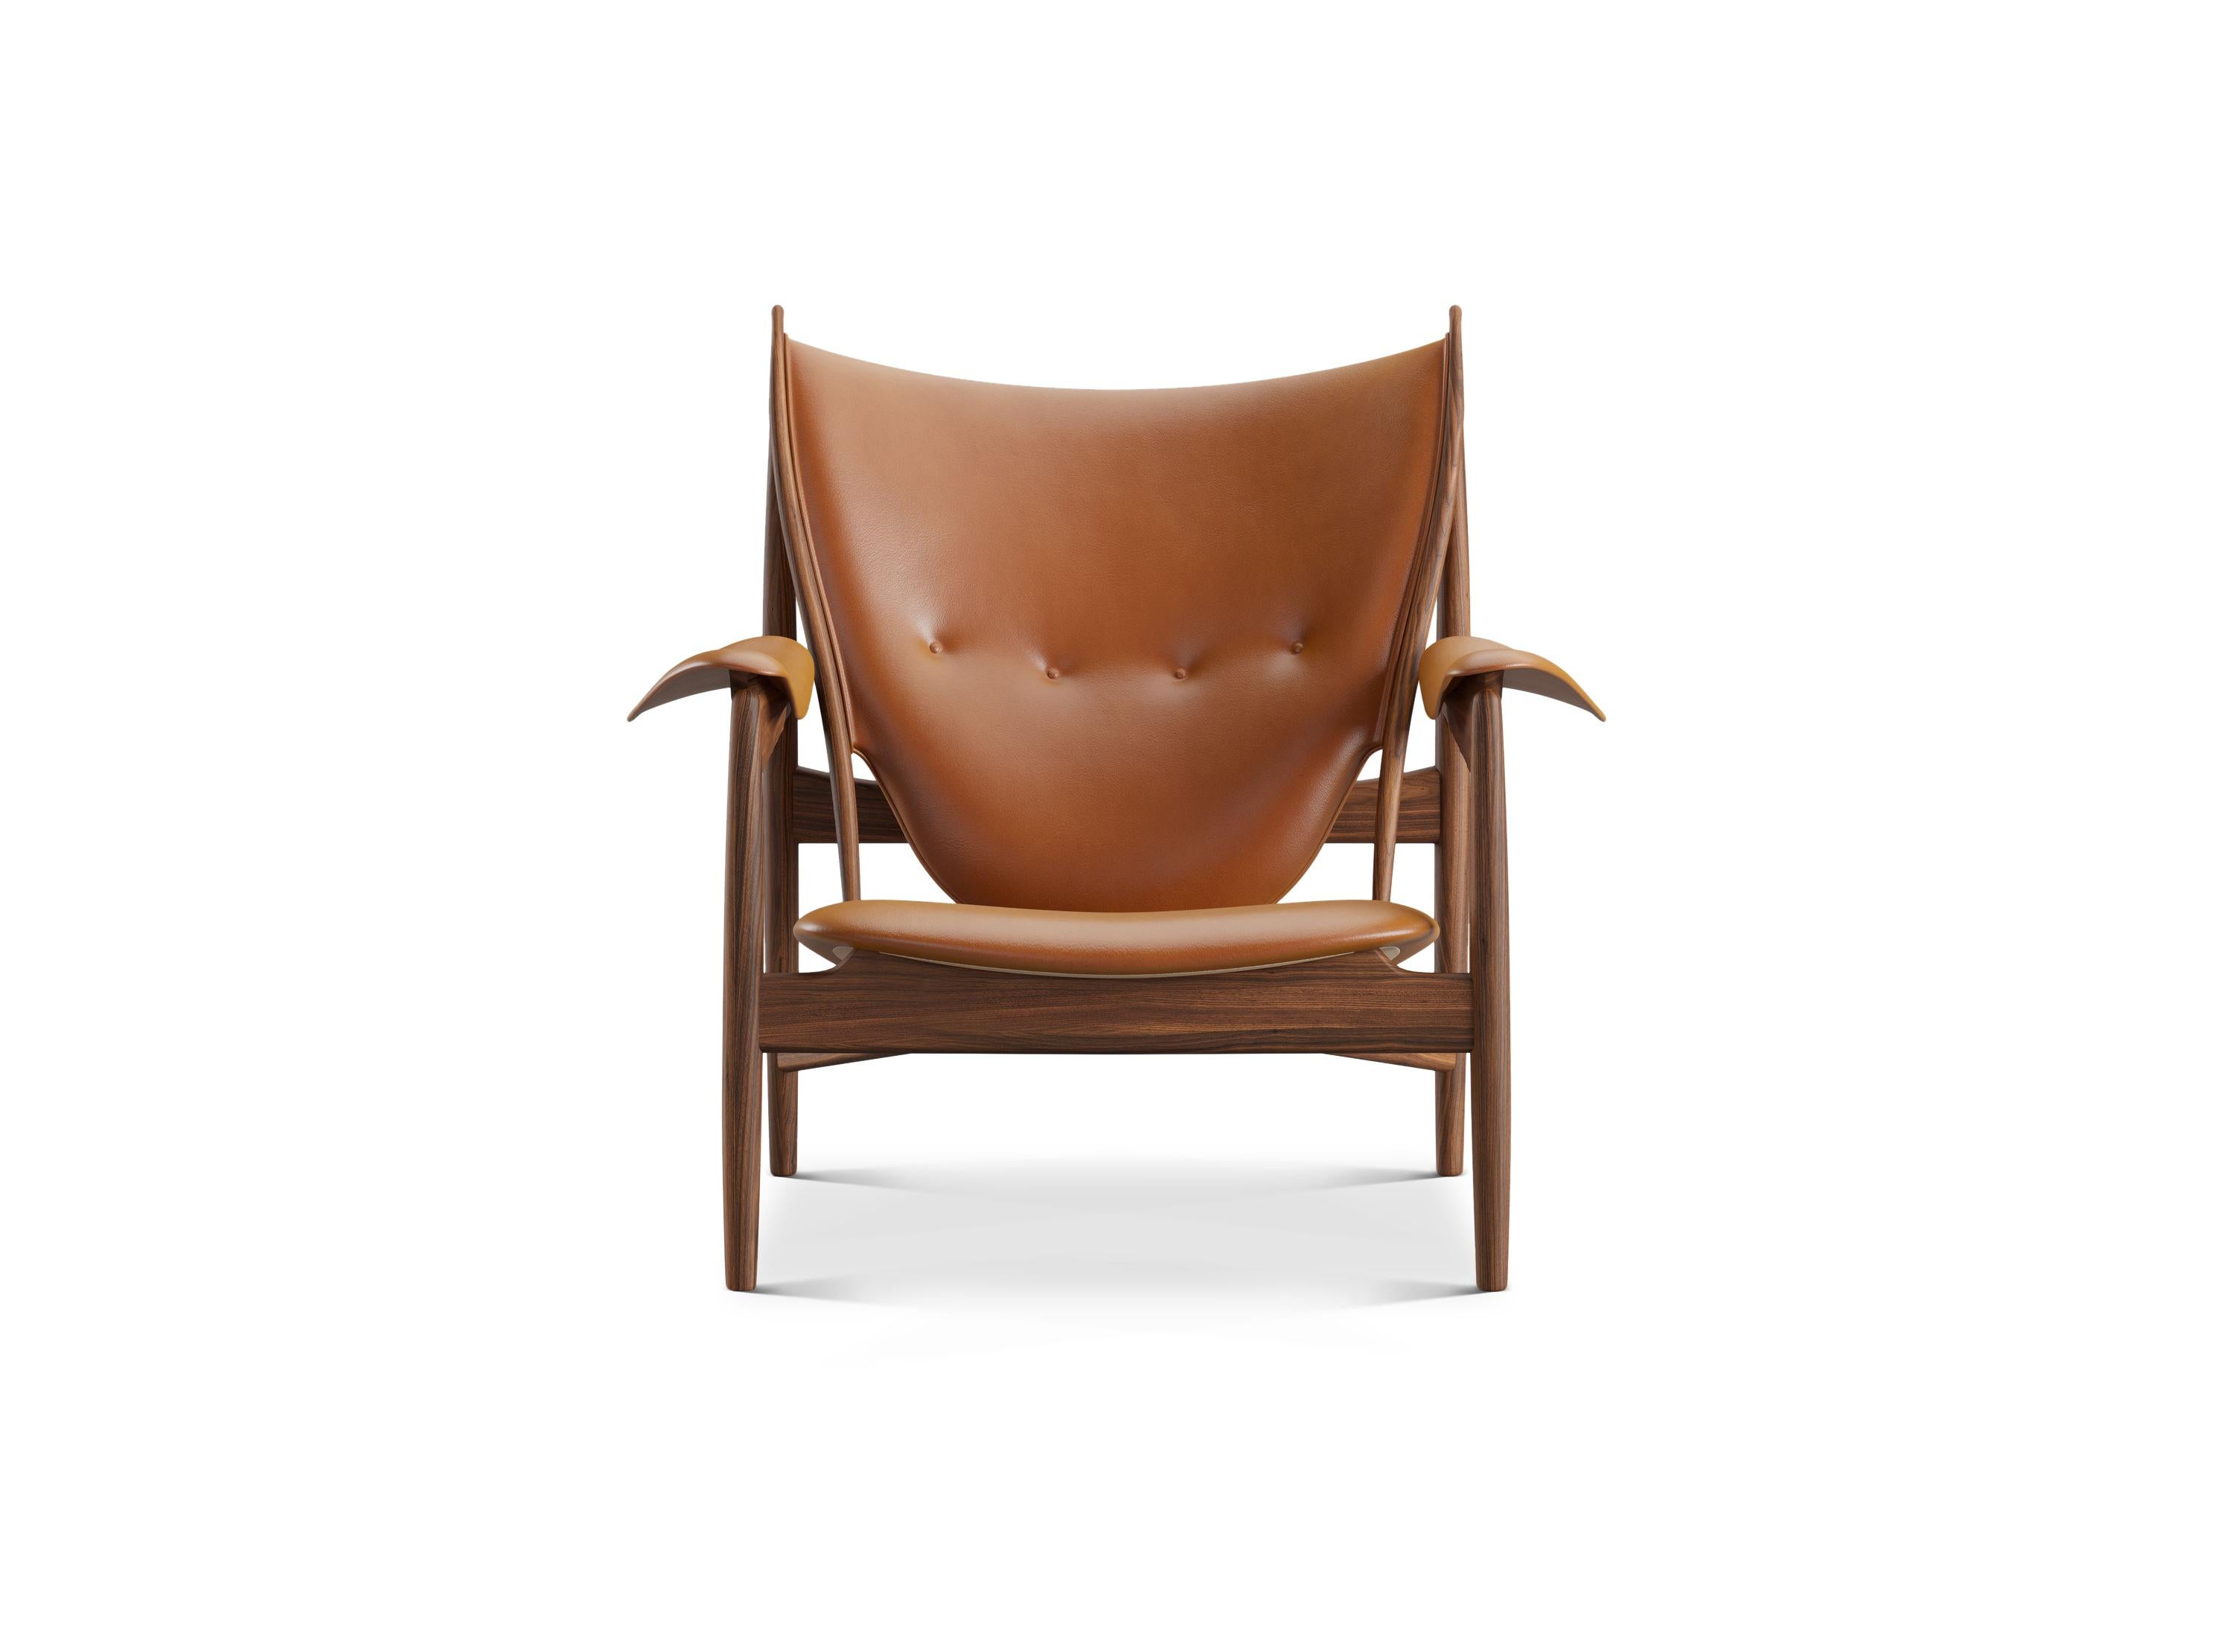 Stuhl von Finn Juhl aus dem Jahr 1949, neu aufgelegt im Jahr 2002.
Hergestellt von House of Finn Juhls in Dänemark.

Der ikonische Chieftain-Stuhl ist eines von Finn Juhls absoluten Meisterwerken und stellt den Höhepunkt seiner Karriere als